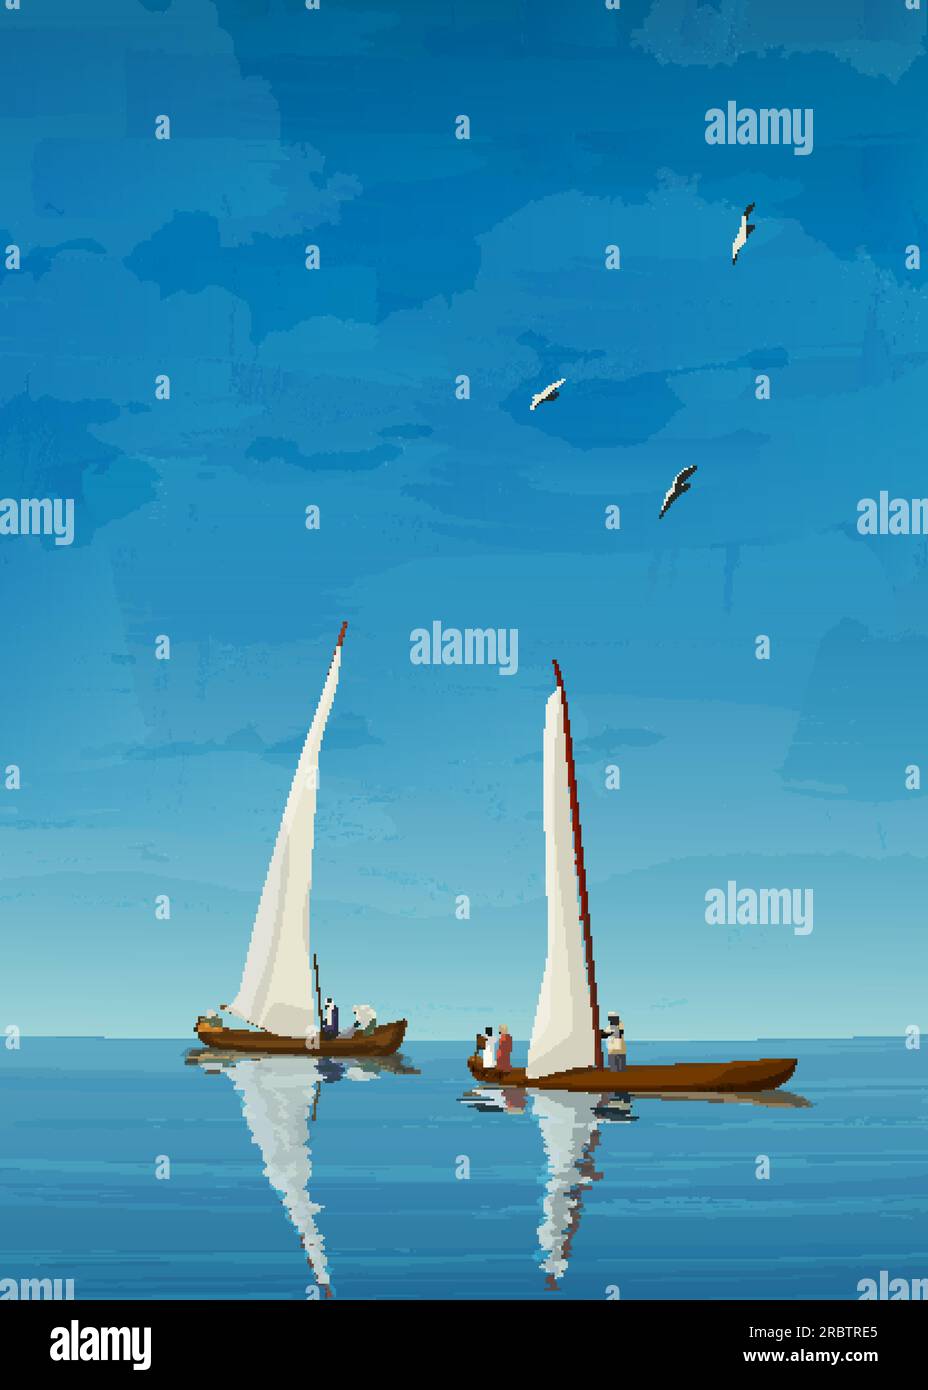 Vieux voiliers pêchant sur la composition de la mer ouverte, illustration vectorielle de fond de paysage marin Illustration de Vecteur